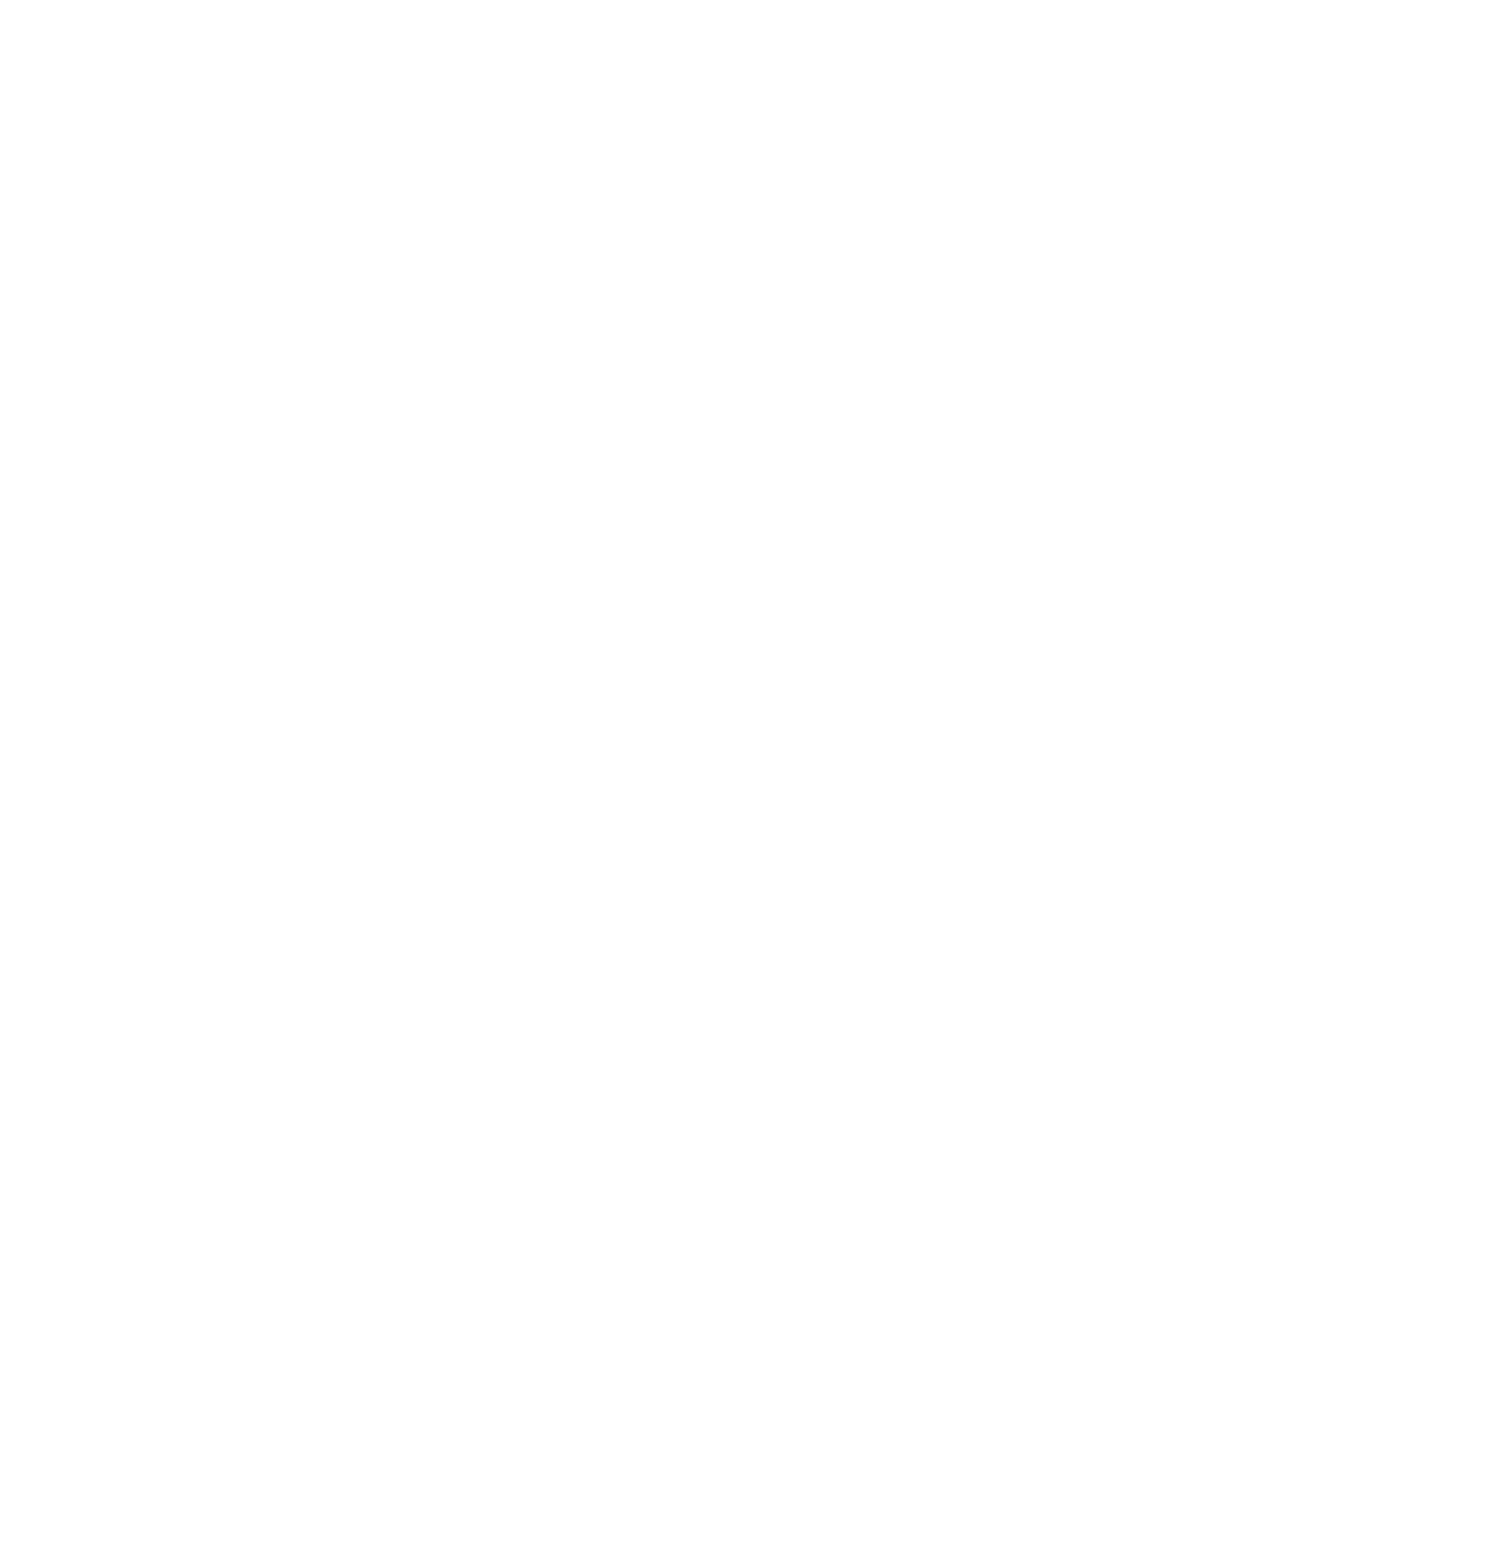 Shimano logo for dark backgrounds (transparent PNG)